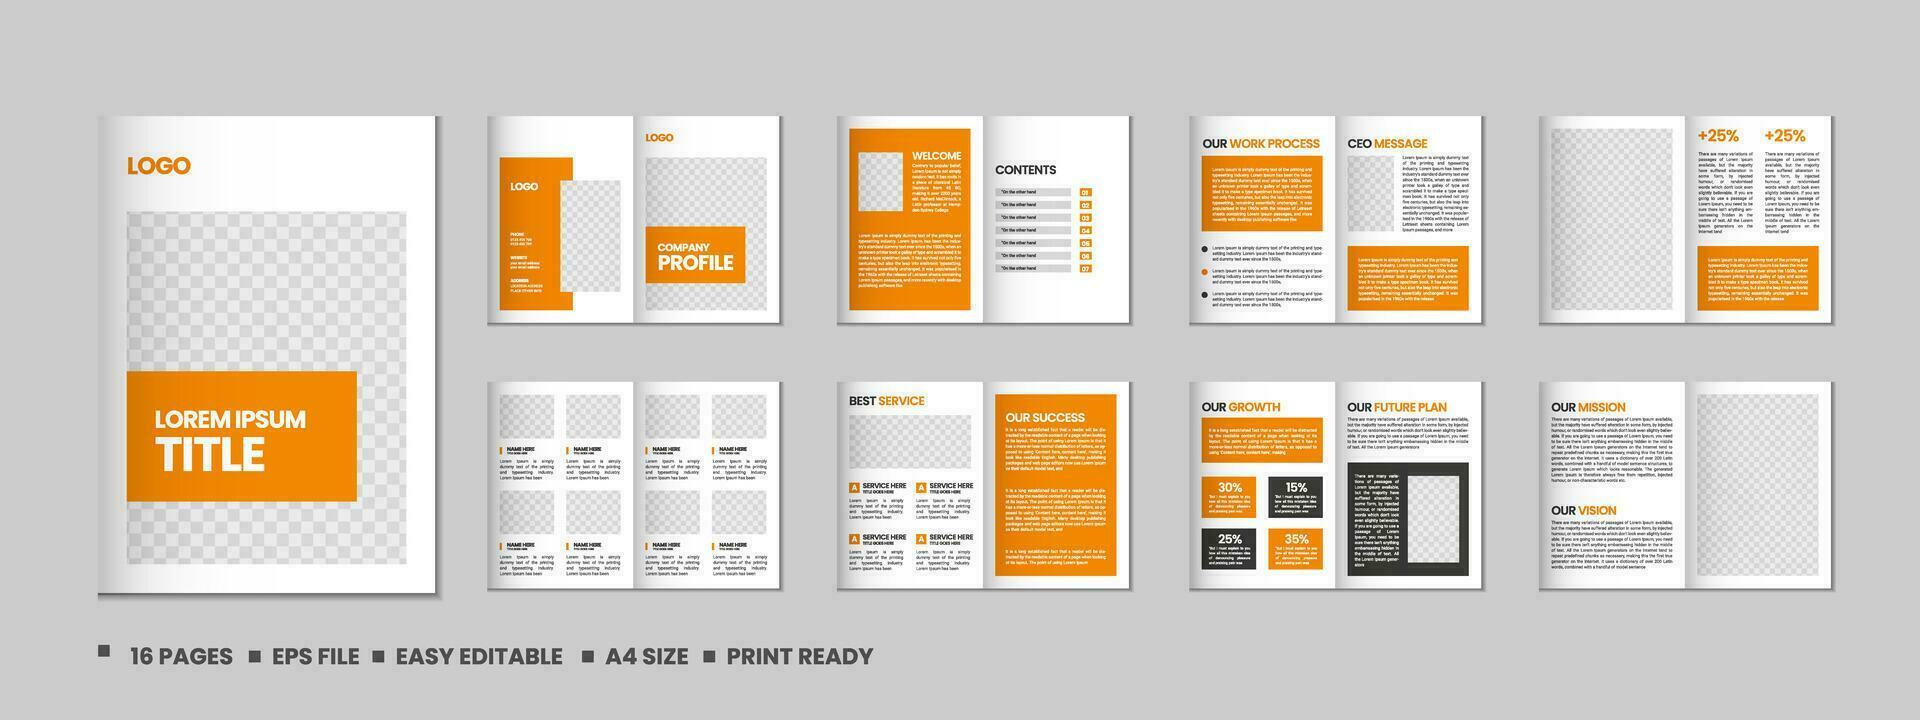 empresa perfil, multi página volantes folleto, dieciséis paginas portafolio revista, anual informe, catalogar y a4 multi página modelo diseño vector